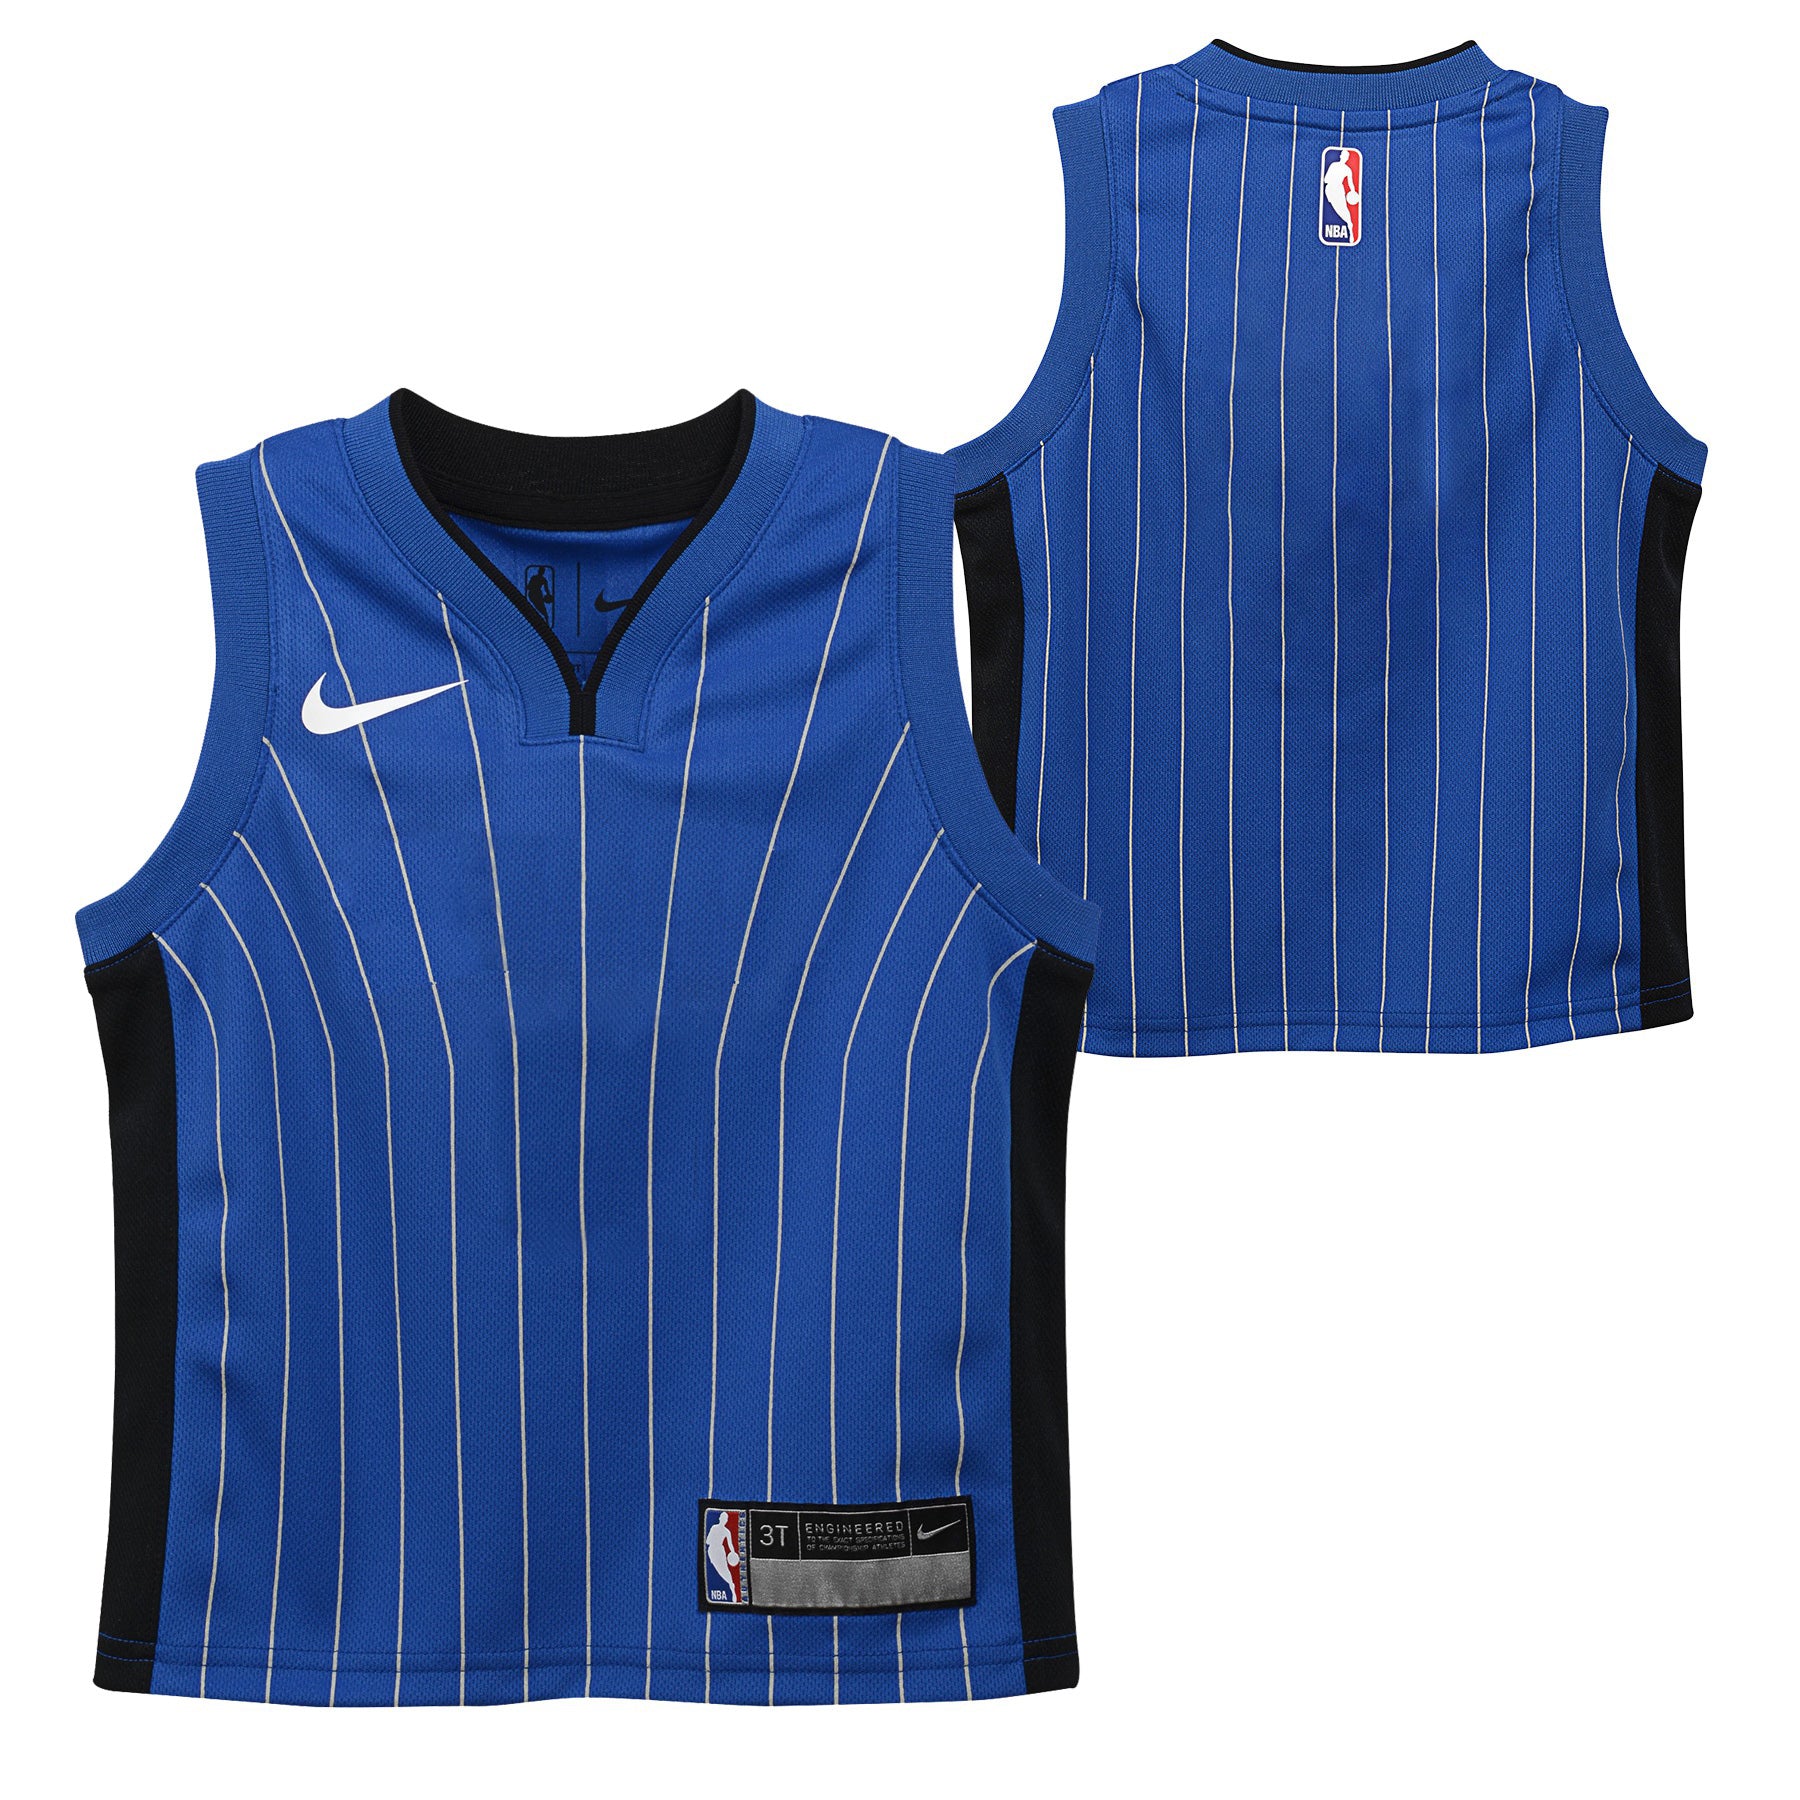 Concept jersey Nike NBA x Orlando Magic